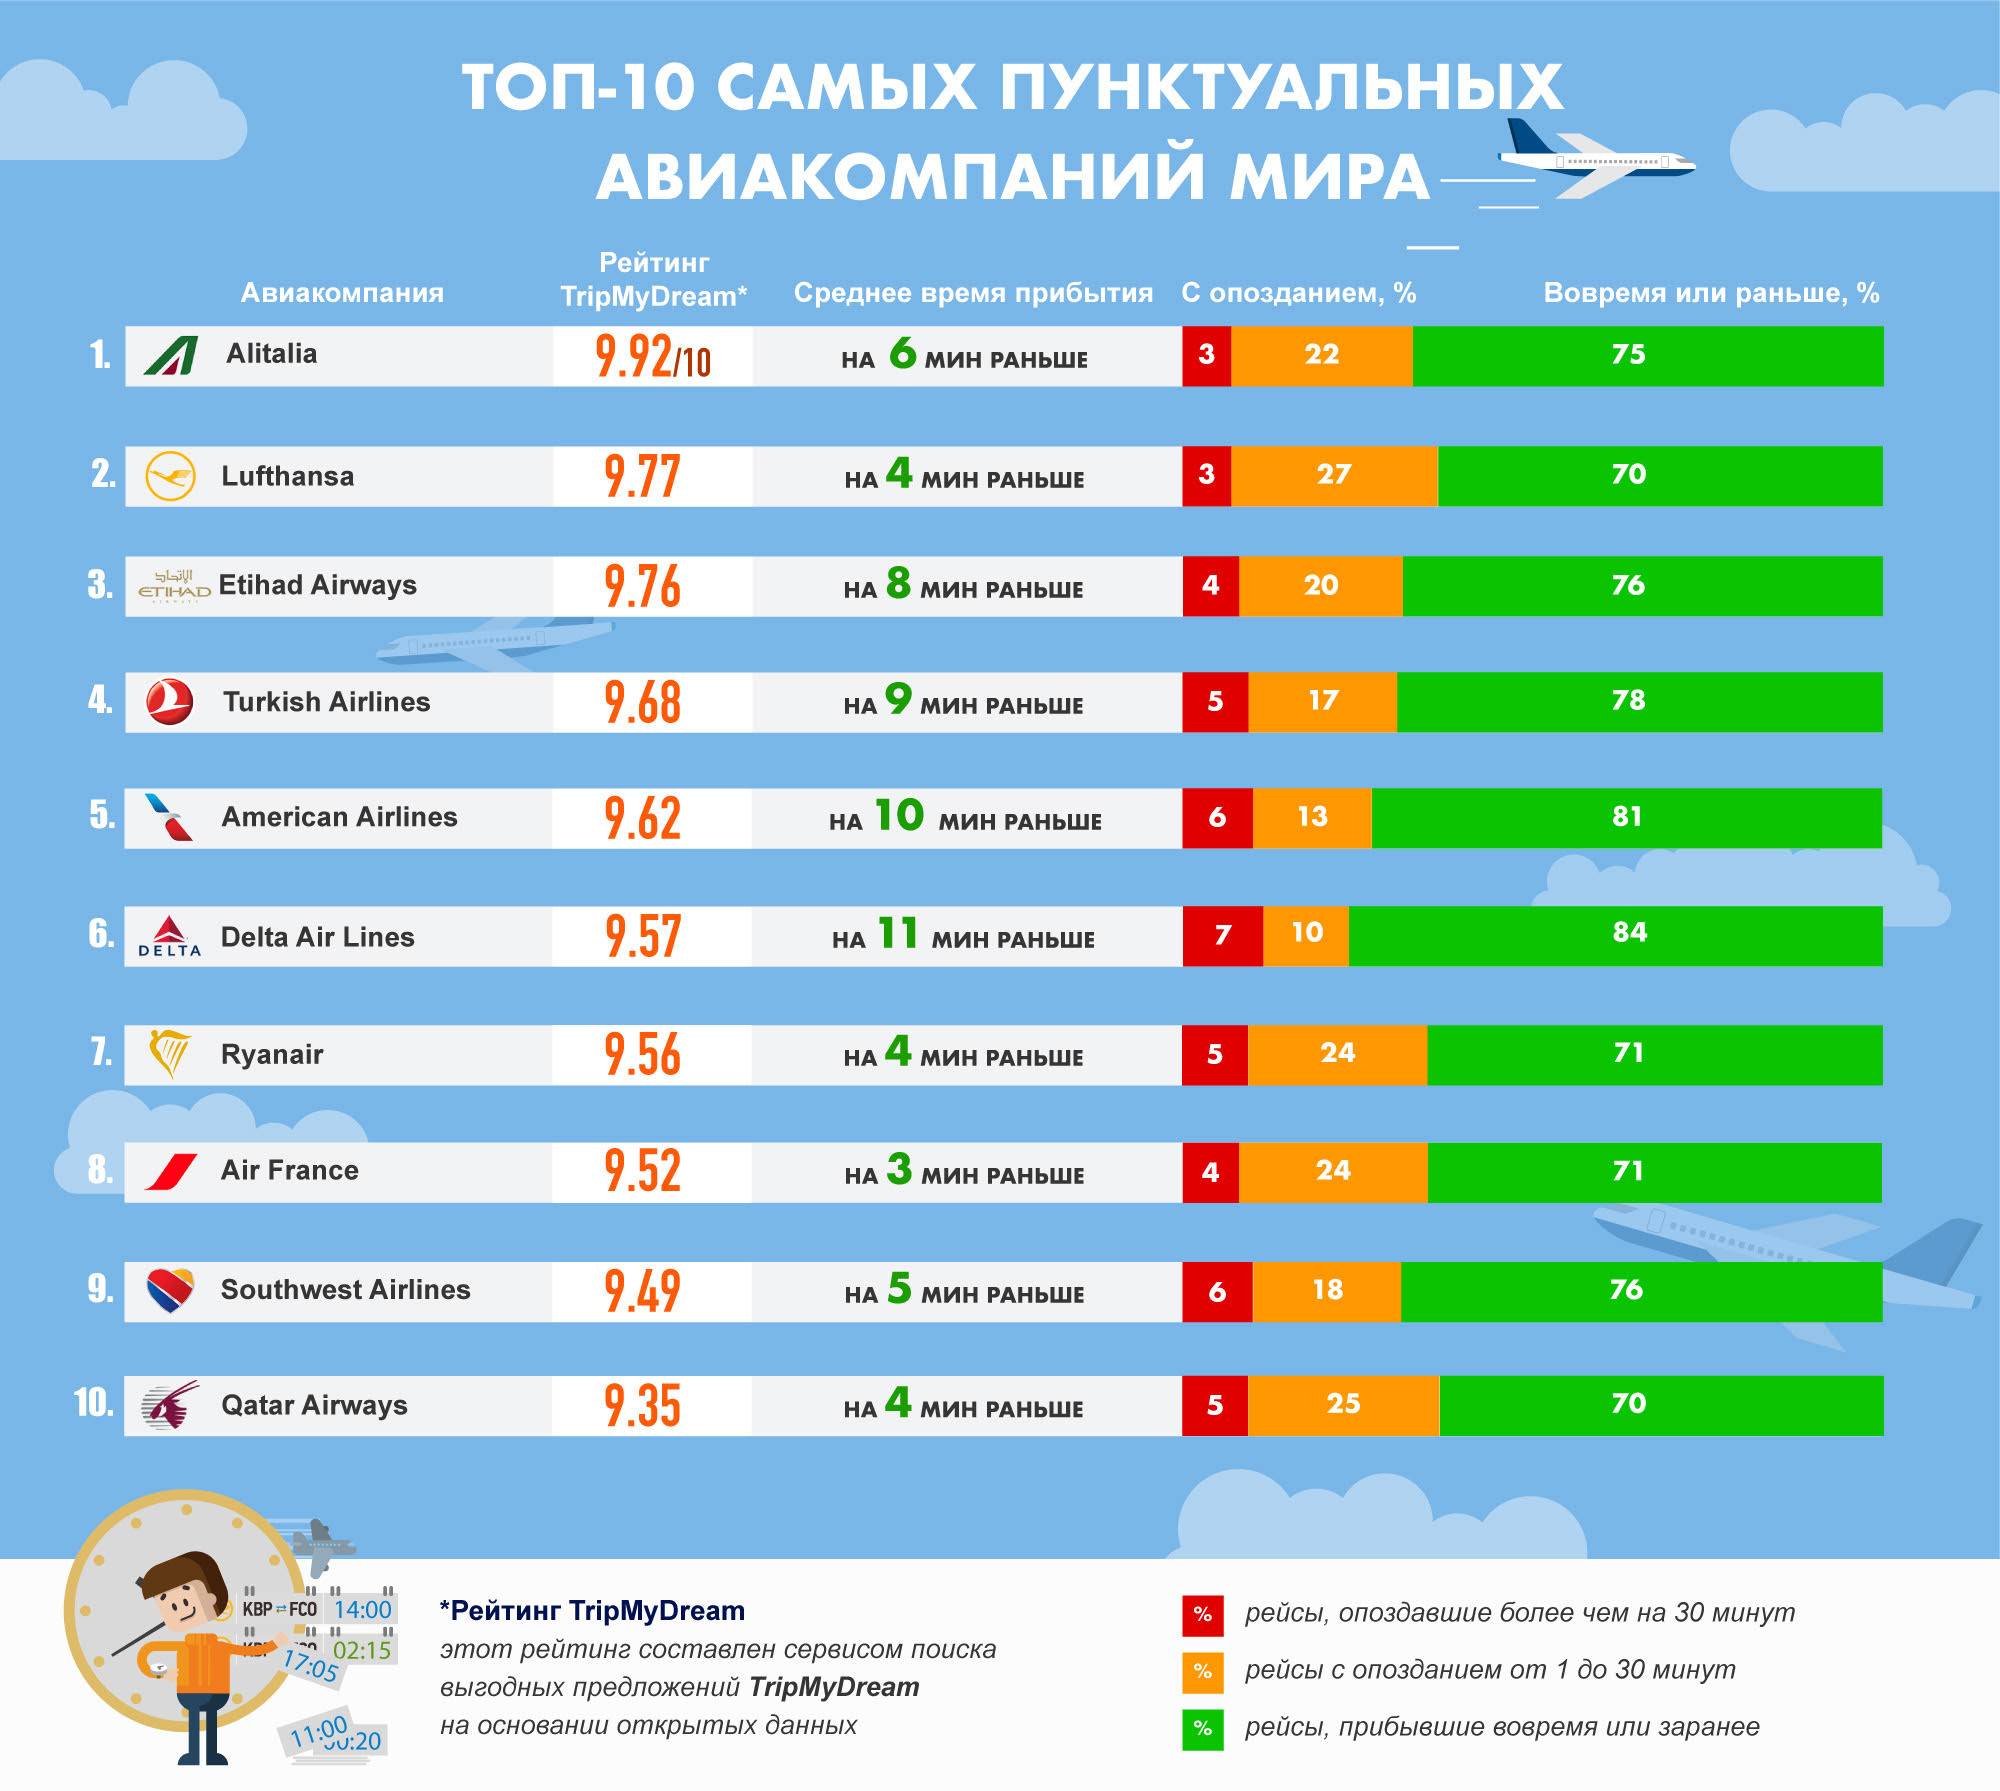 Рейтинг авиакомпаний россии на 2019 год, топ-10 список лучших